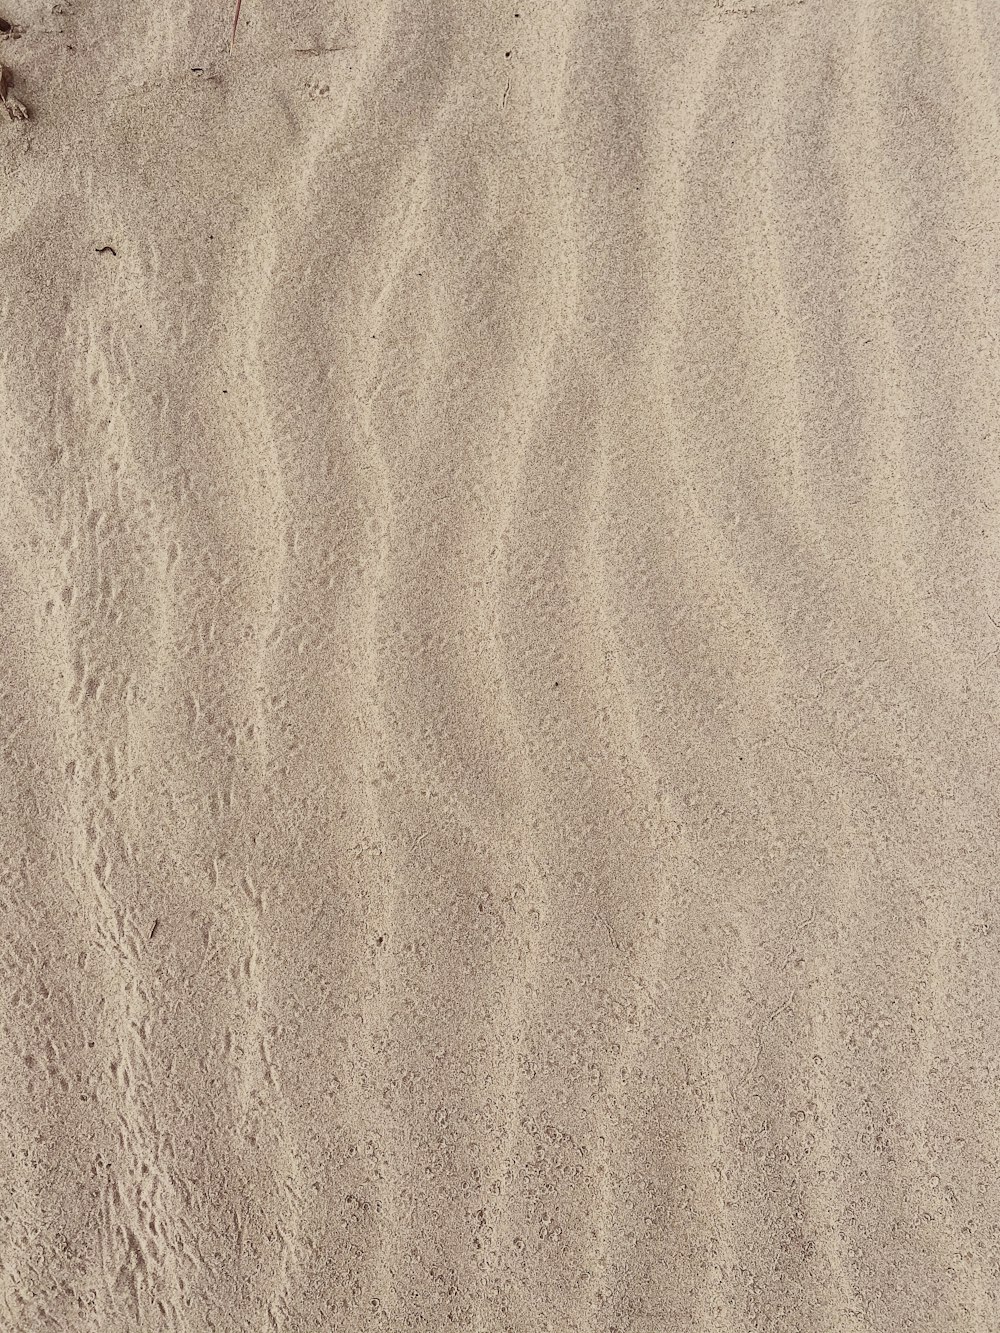 사람의 그림자가 있는 갈색 모래